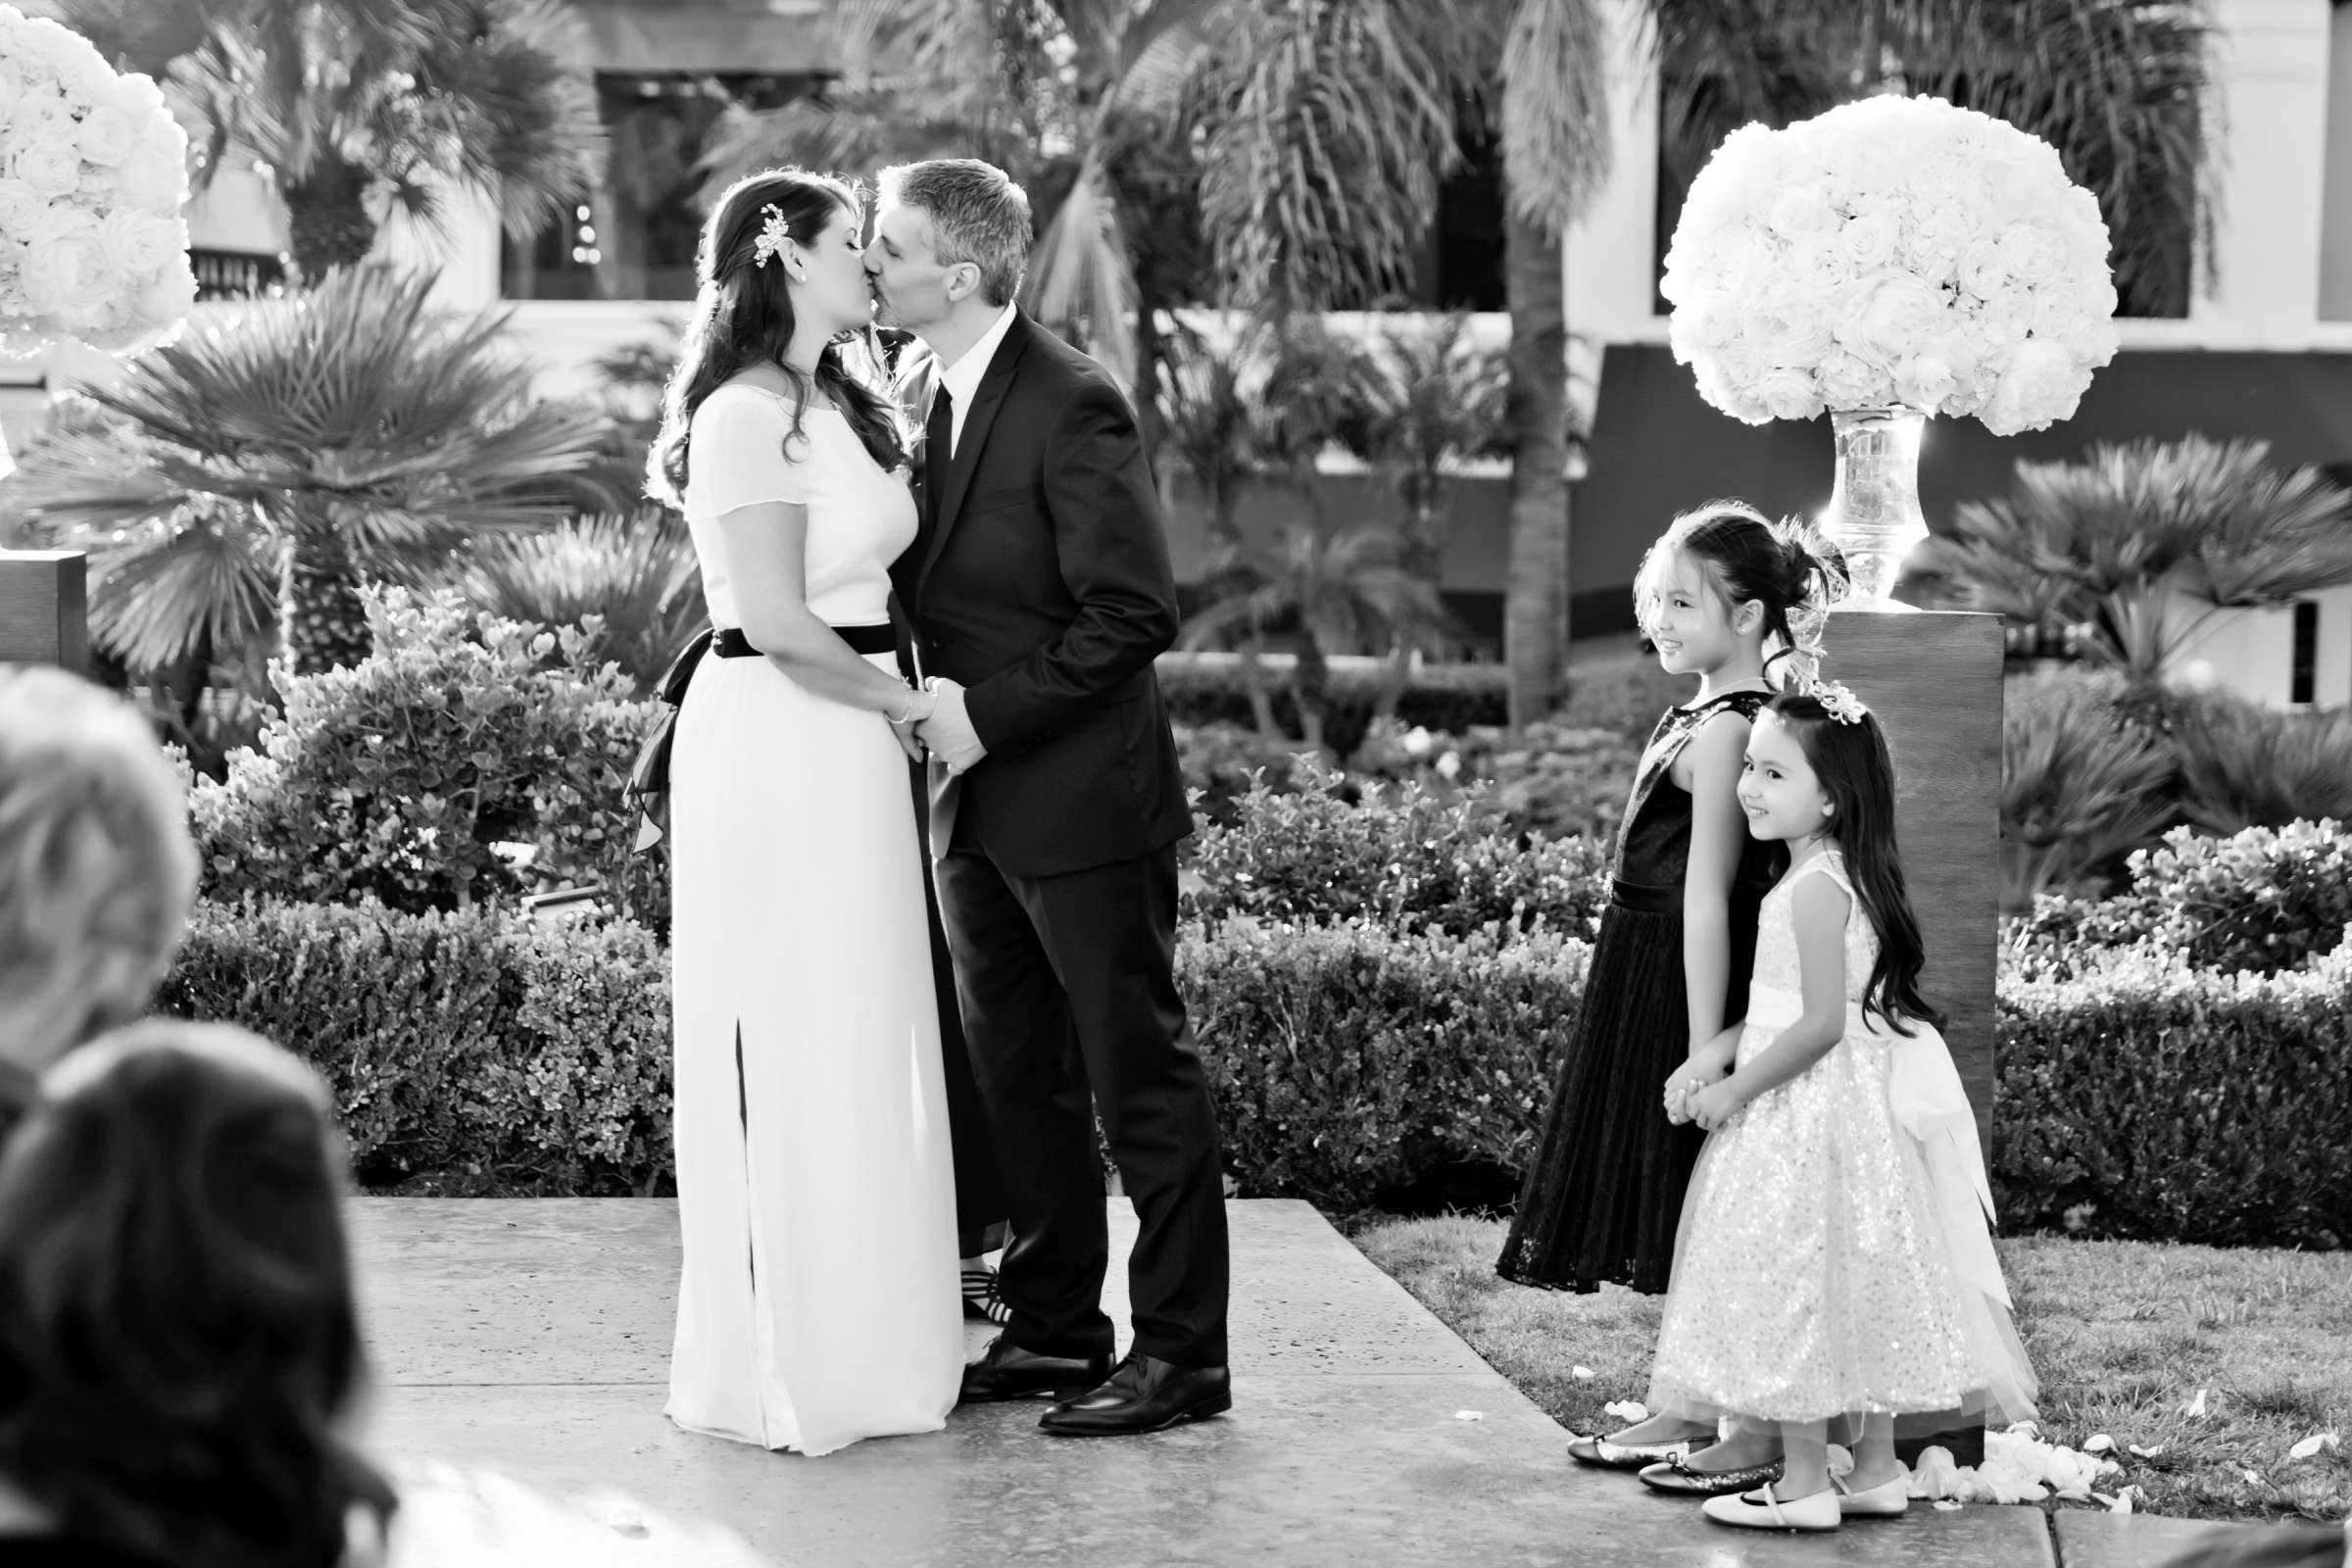 Hotel Del Coronado Wedding, Melis and Marc Wedding Photo #13 by True Photography